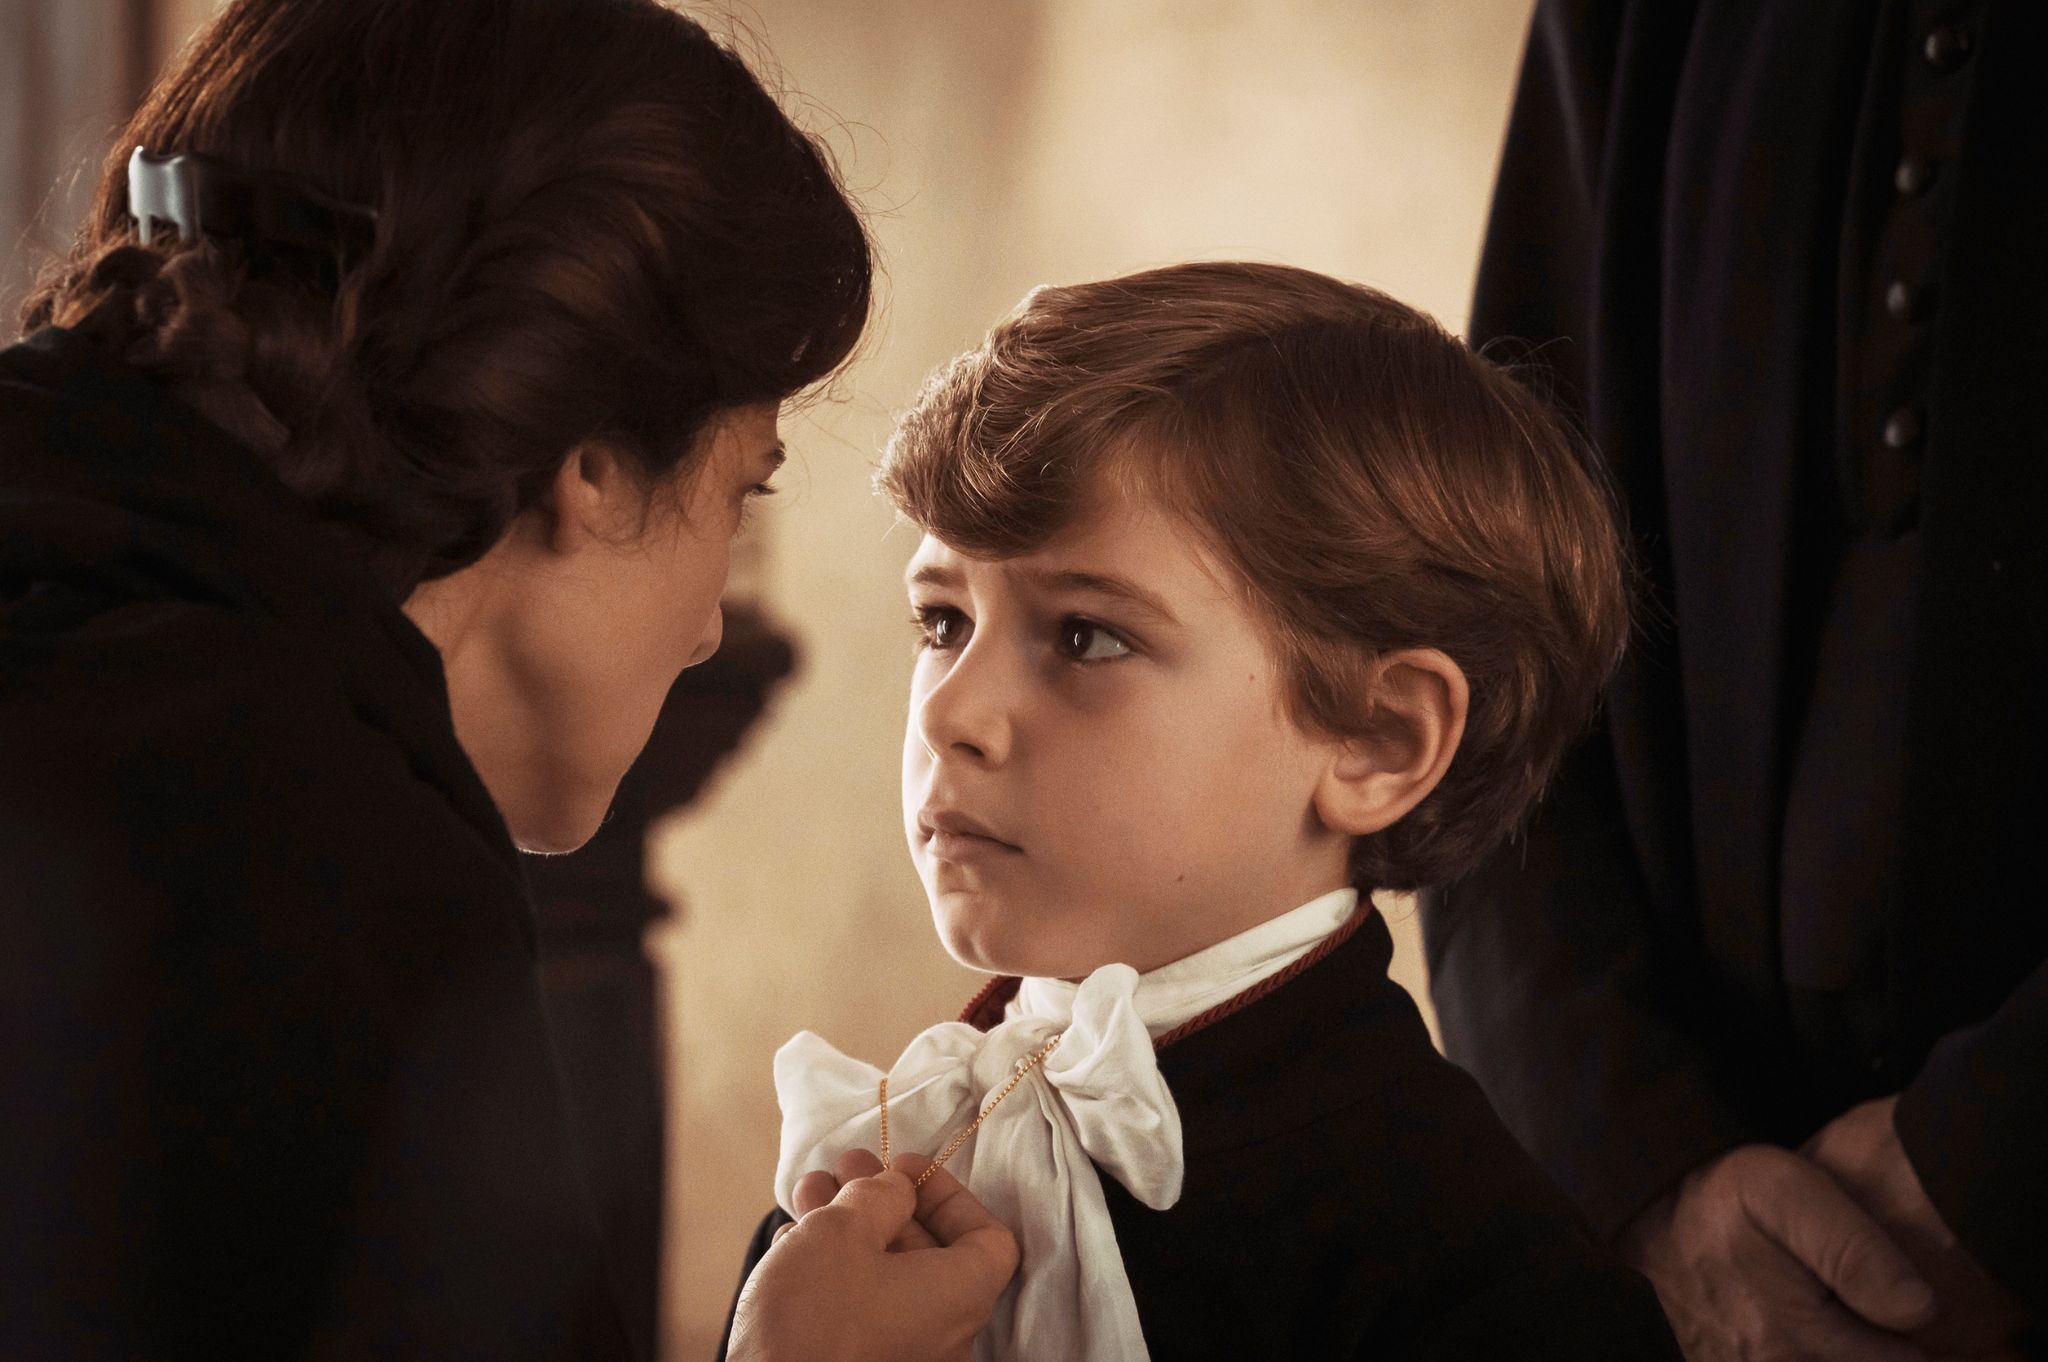 Enea Sala als der junge Edgardo Mortara und Barbara Ronchi als seine Mutter Marianna.